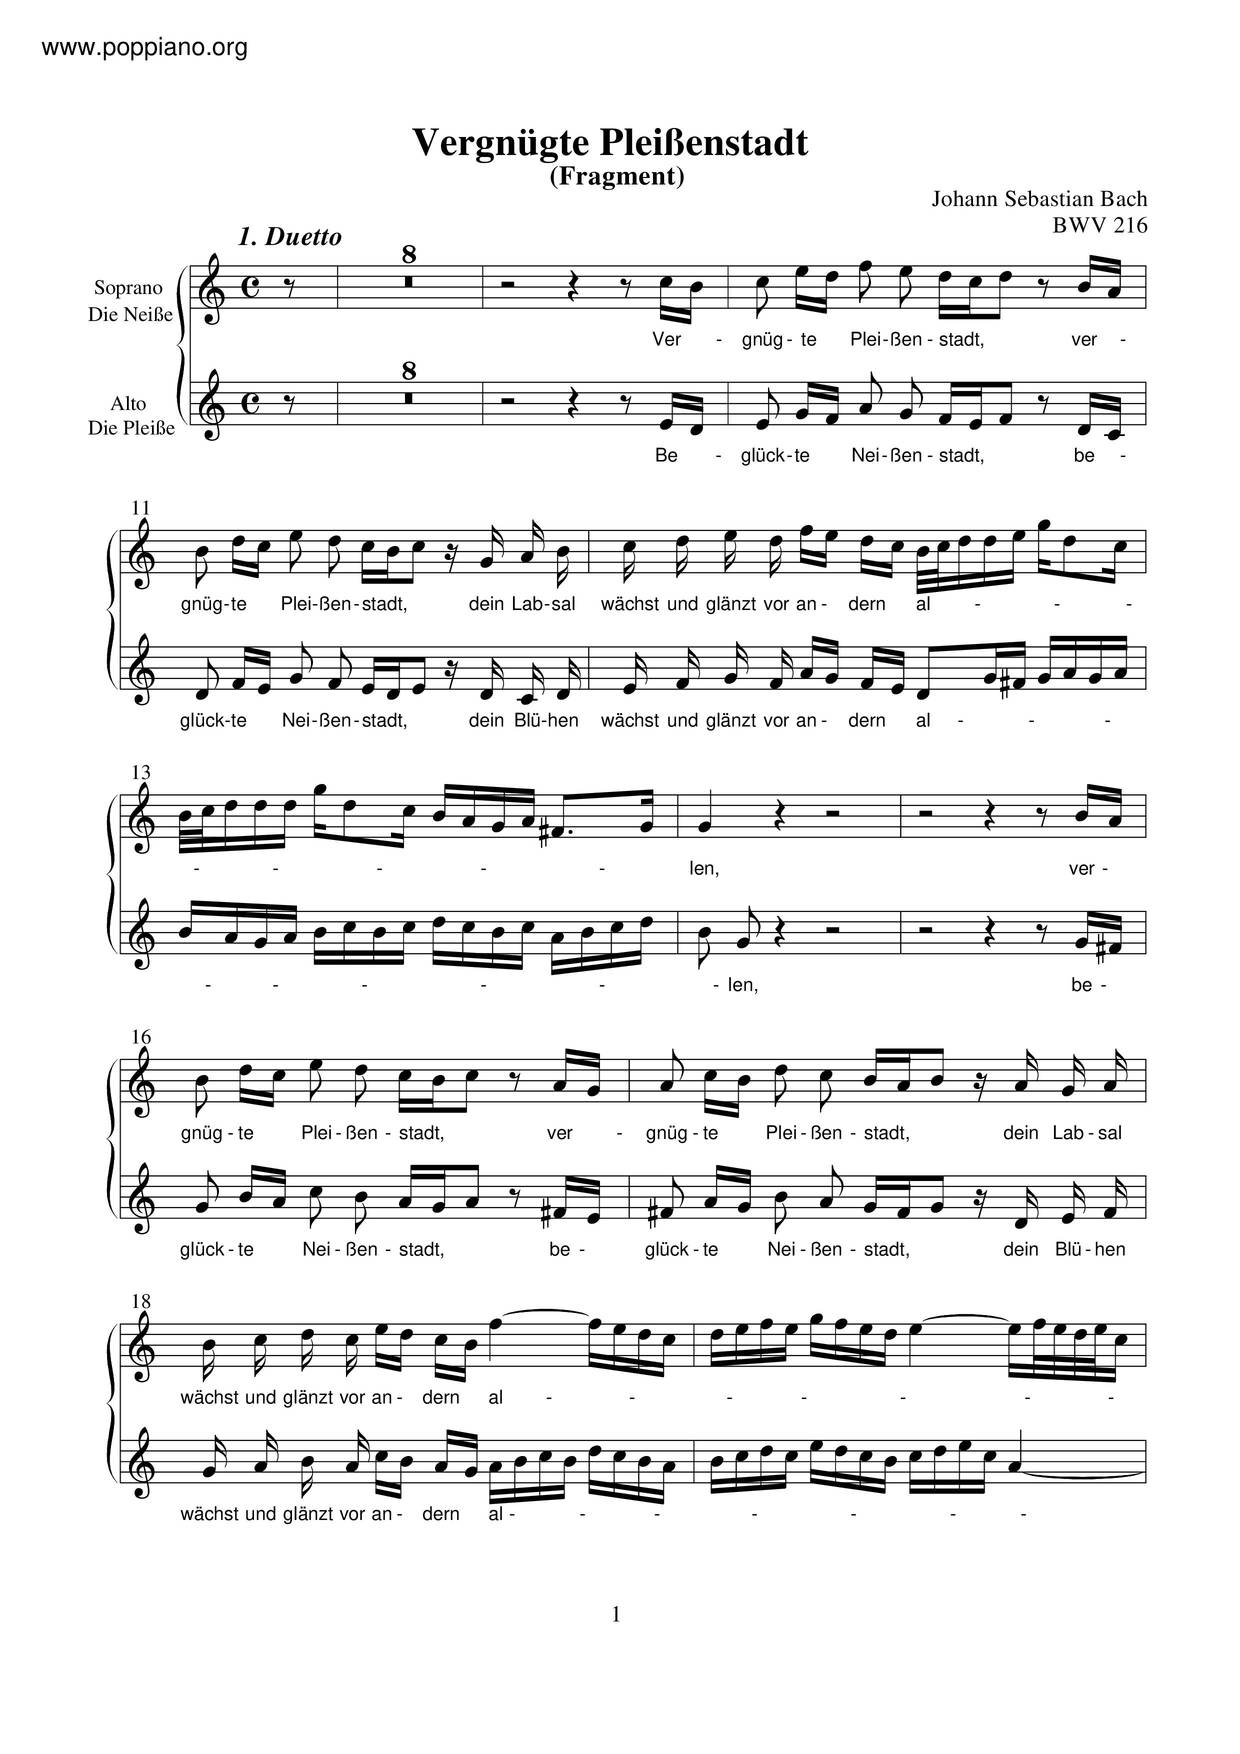 Vergnügte Pleissenstadt, BWV 216琴谱